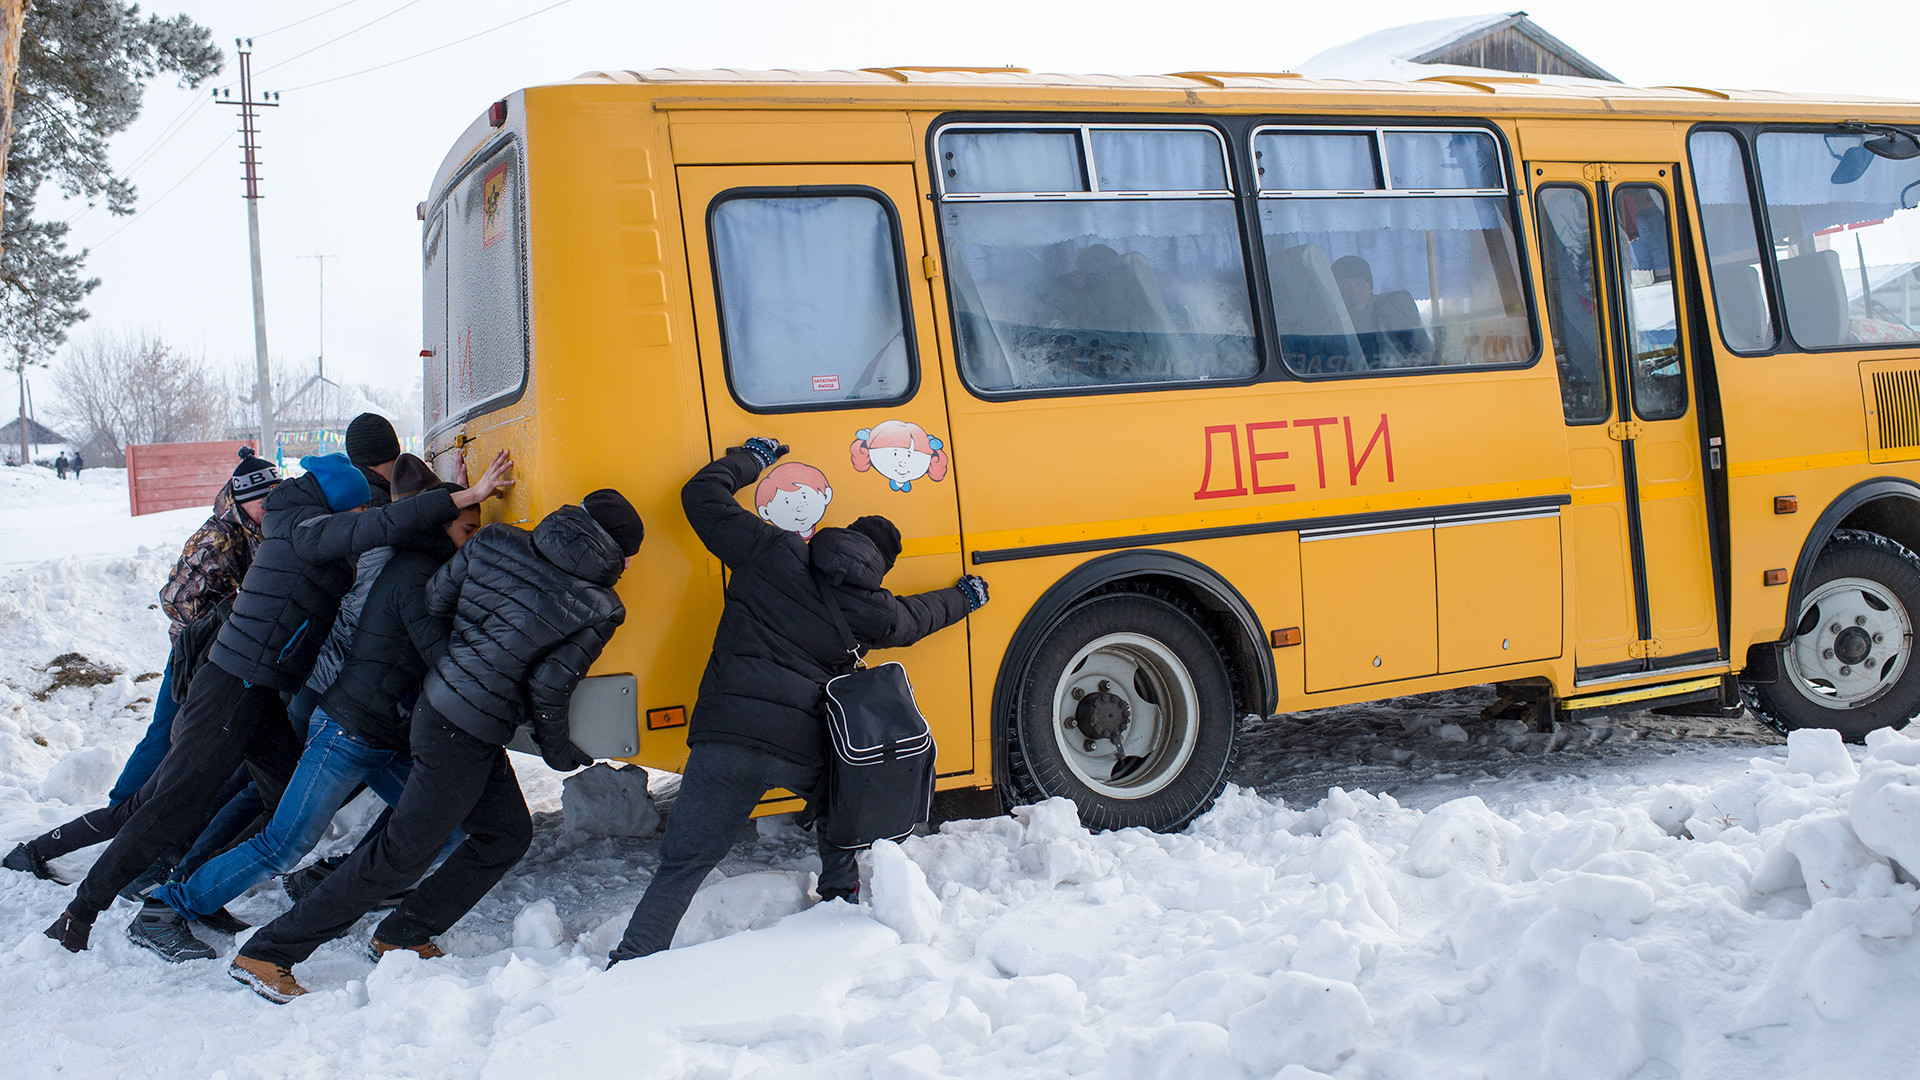 Мужчины толкают застрявший в снегу автобус во время сельской зимней спартакиады в селе Евгащино Омской области. 